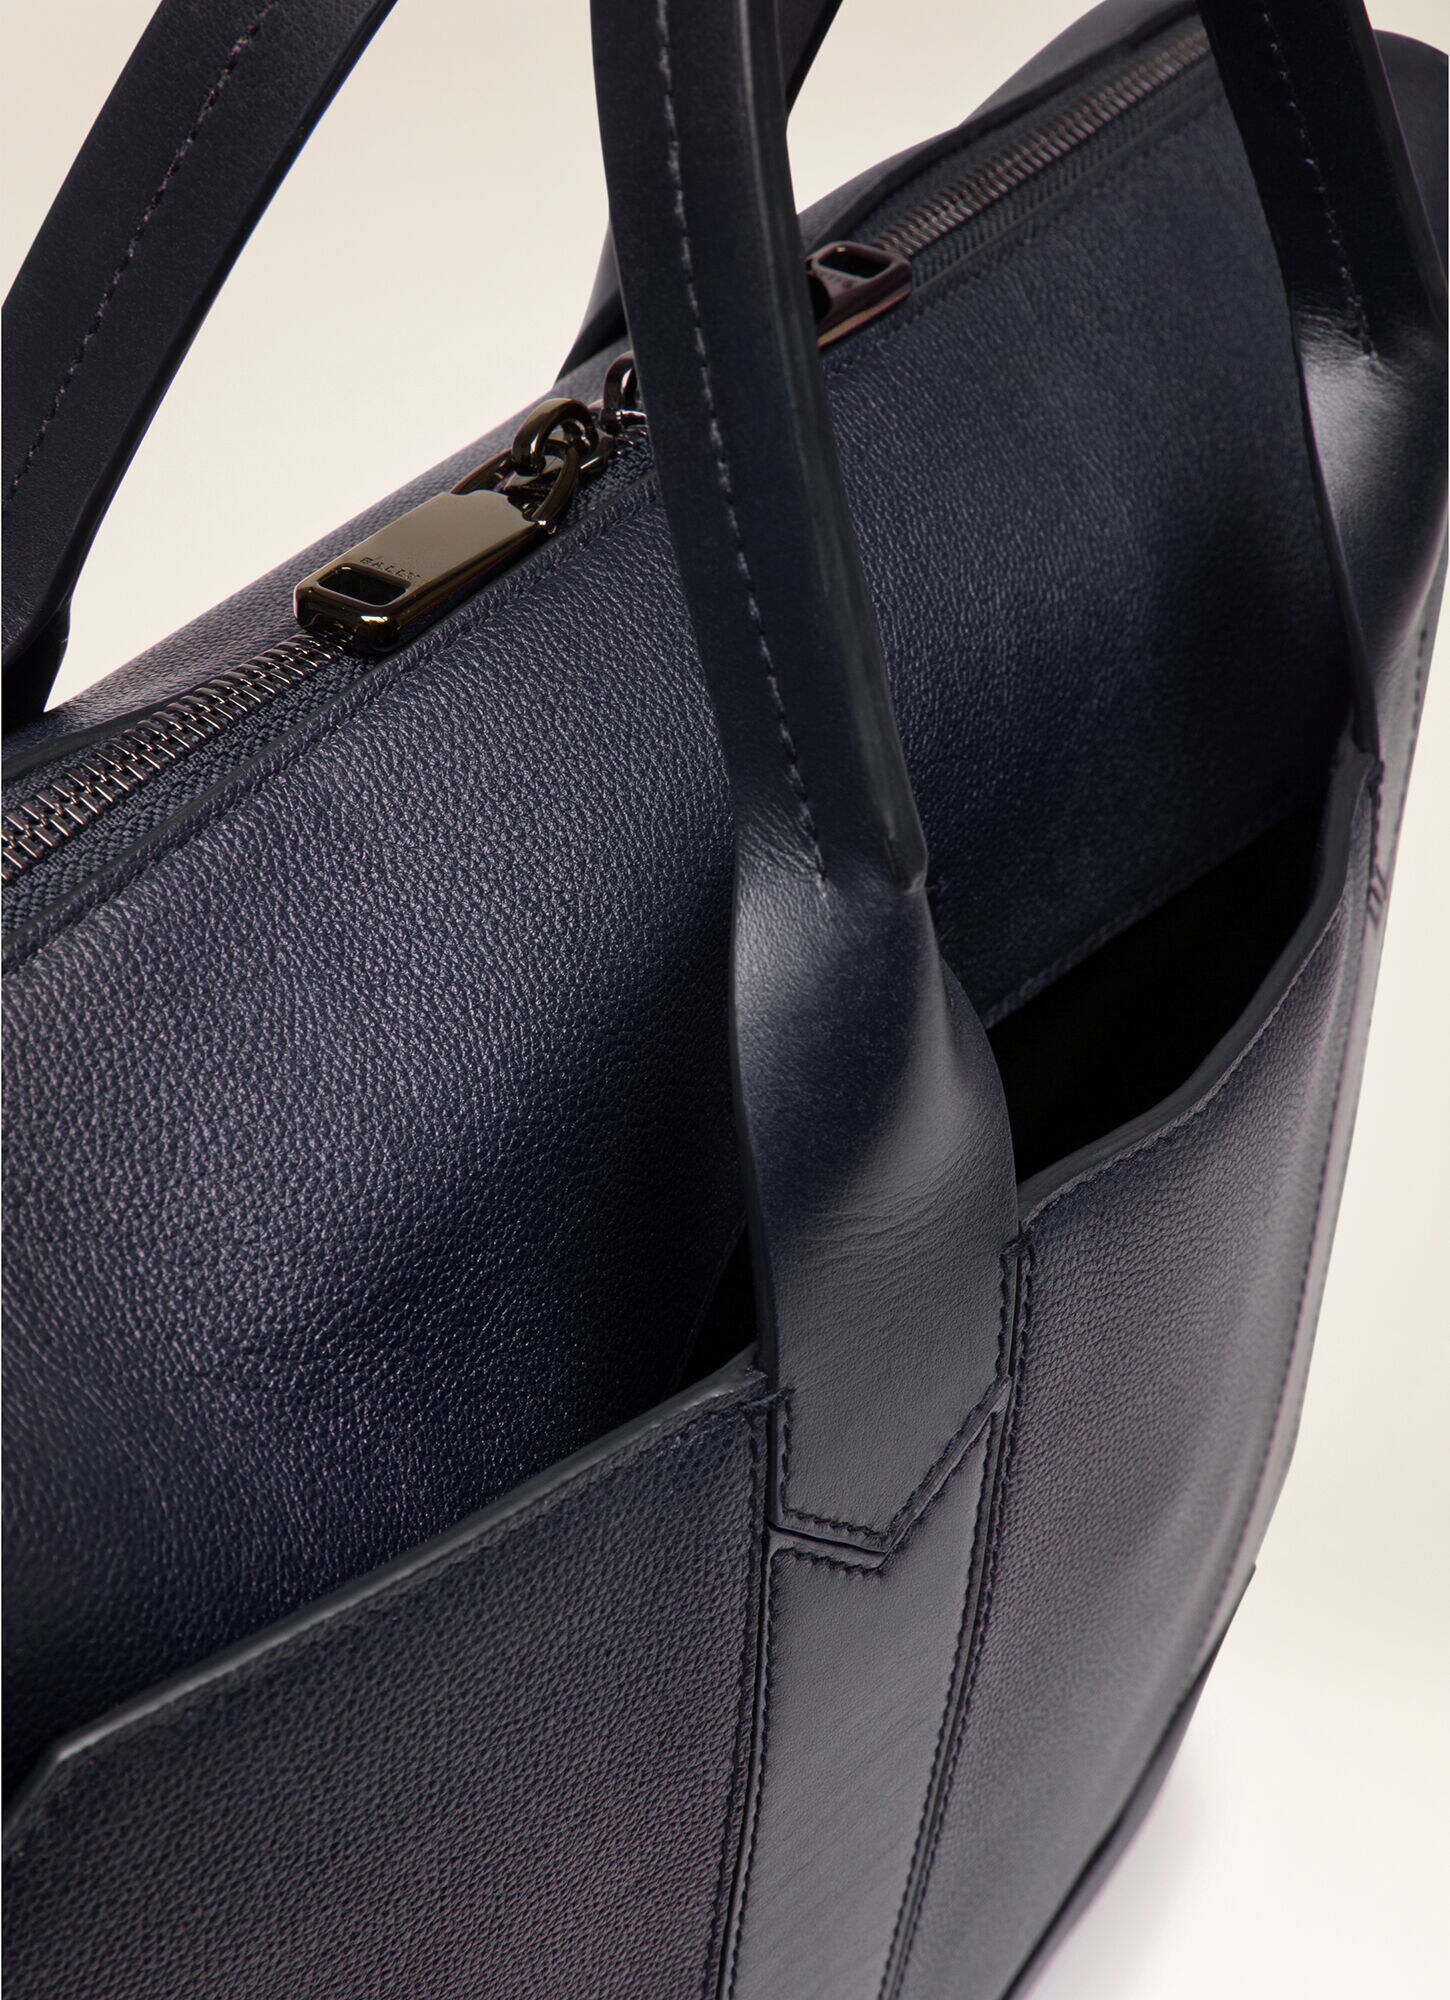 リビーダショップ2号店バリー メンズ ビジネス系 leather briefcase 